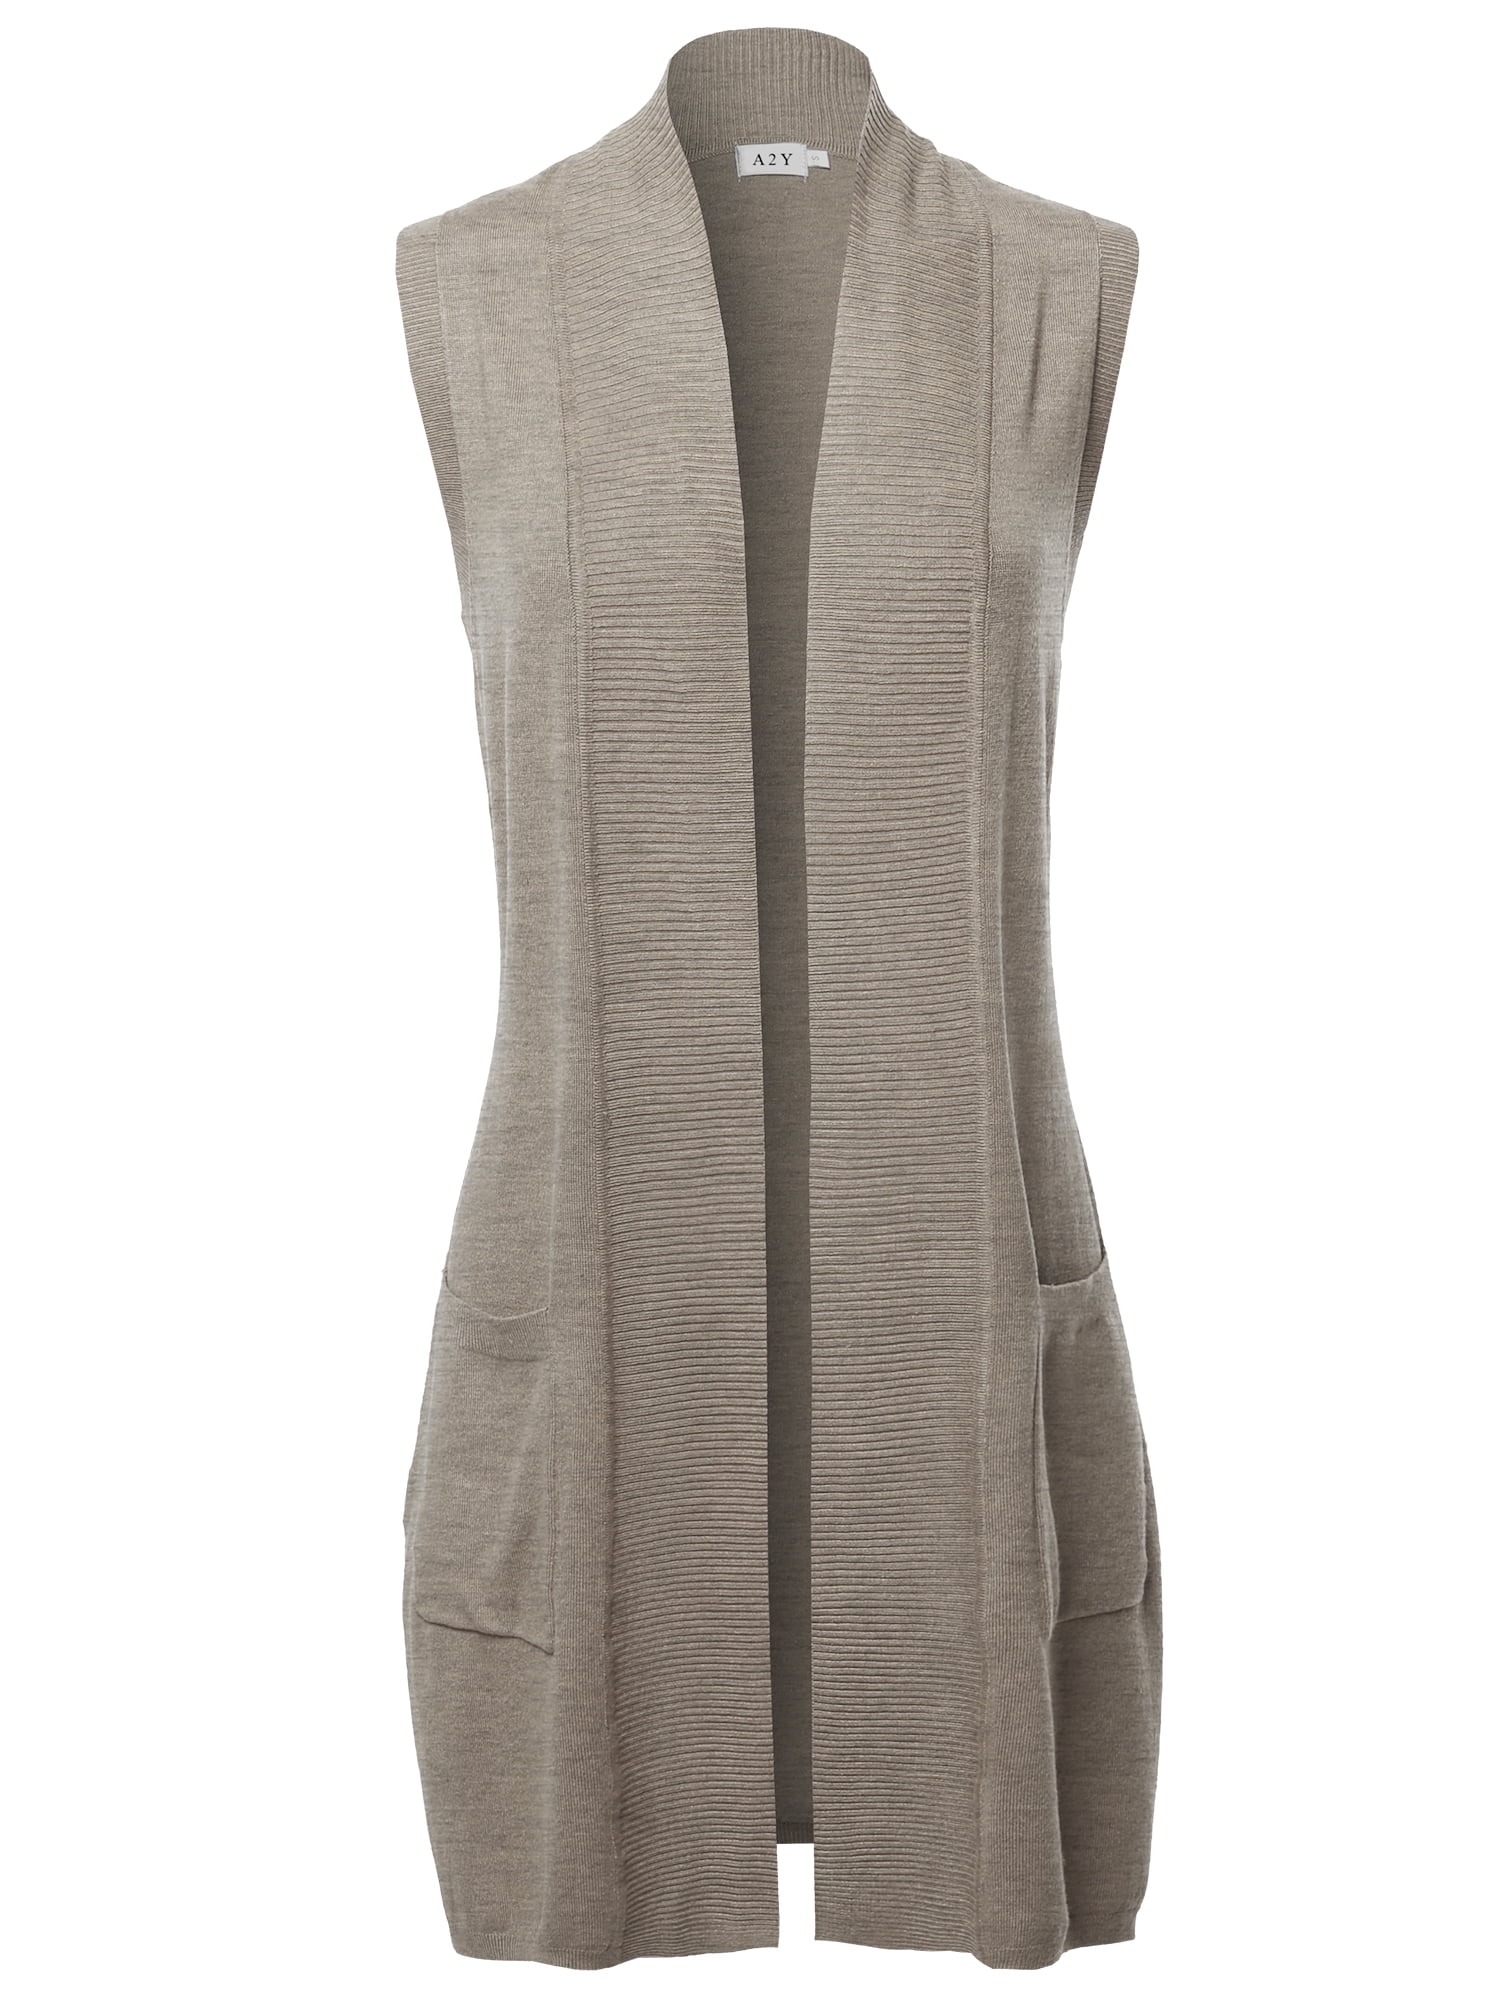 Aeneontrue Women's Sleeveless Long Cardigans Front Open Knit Vest Button Down Sweater Tops 